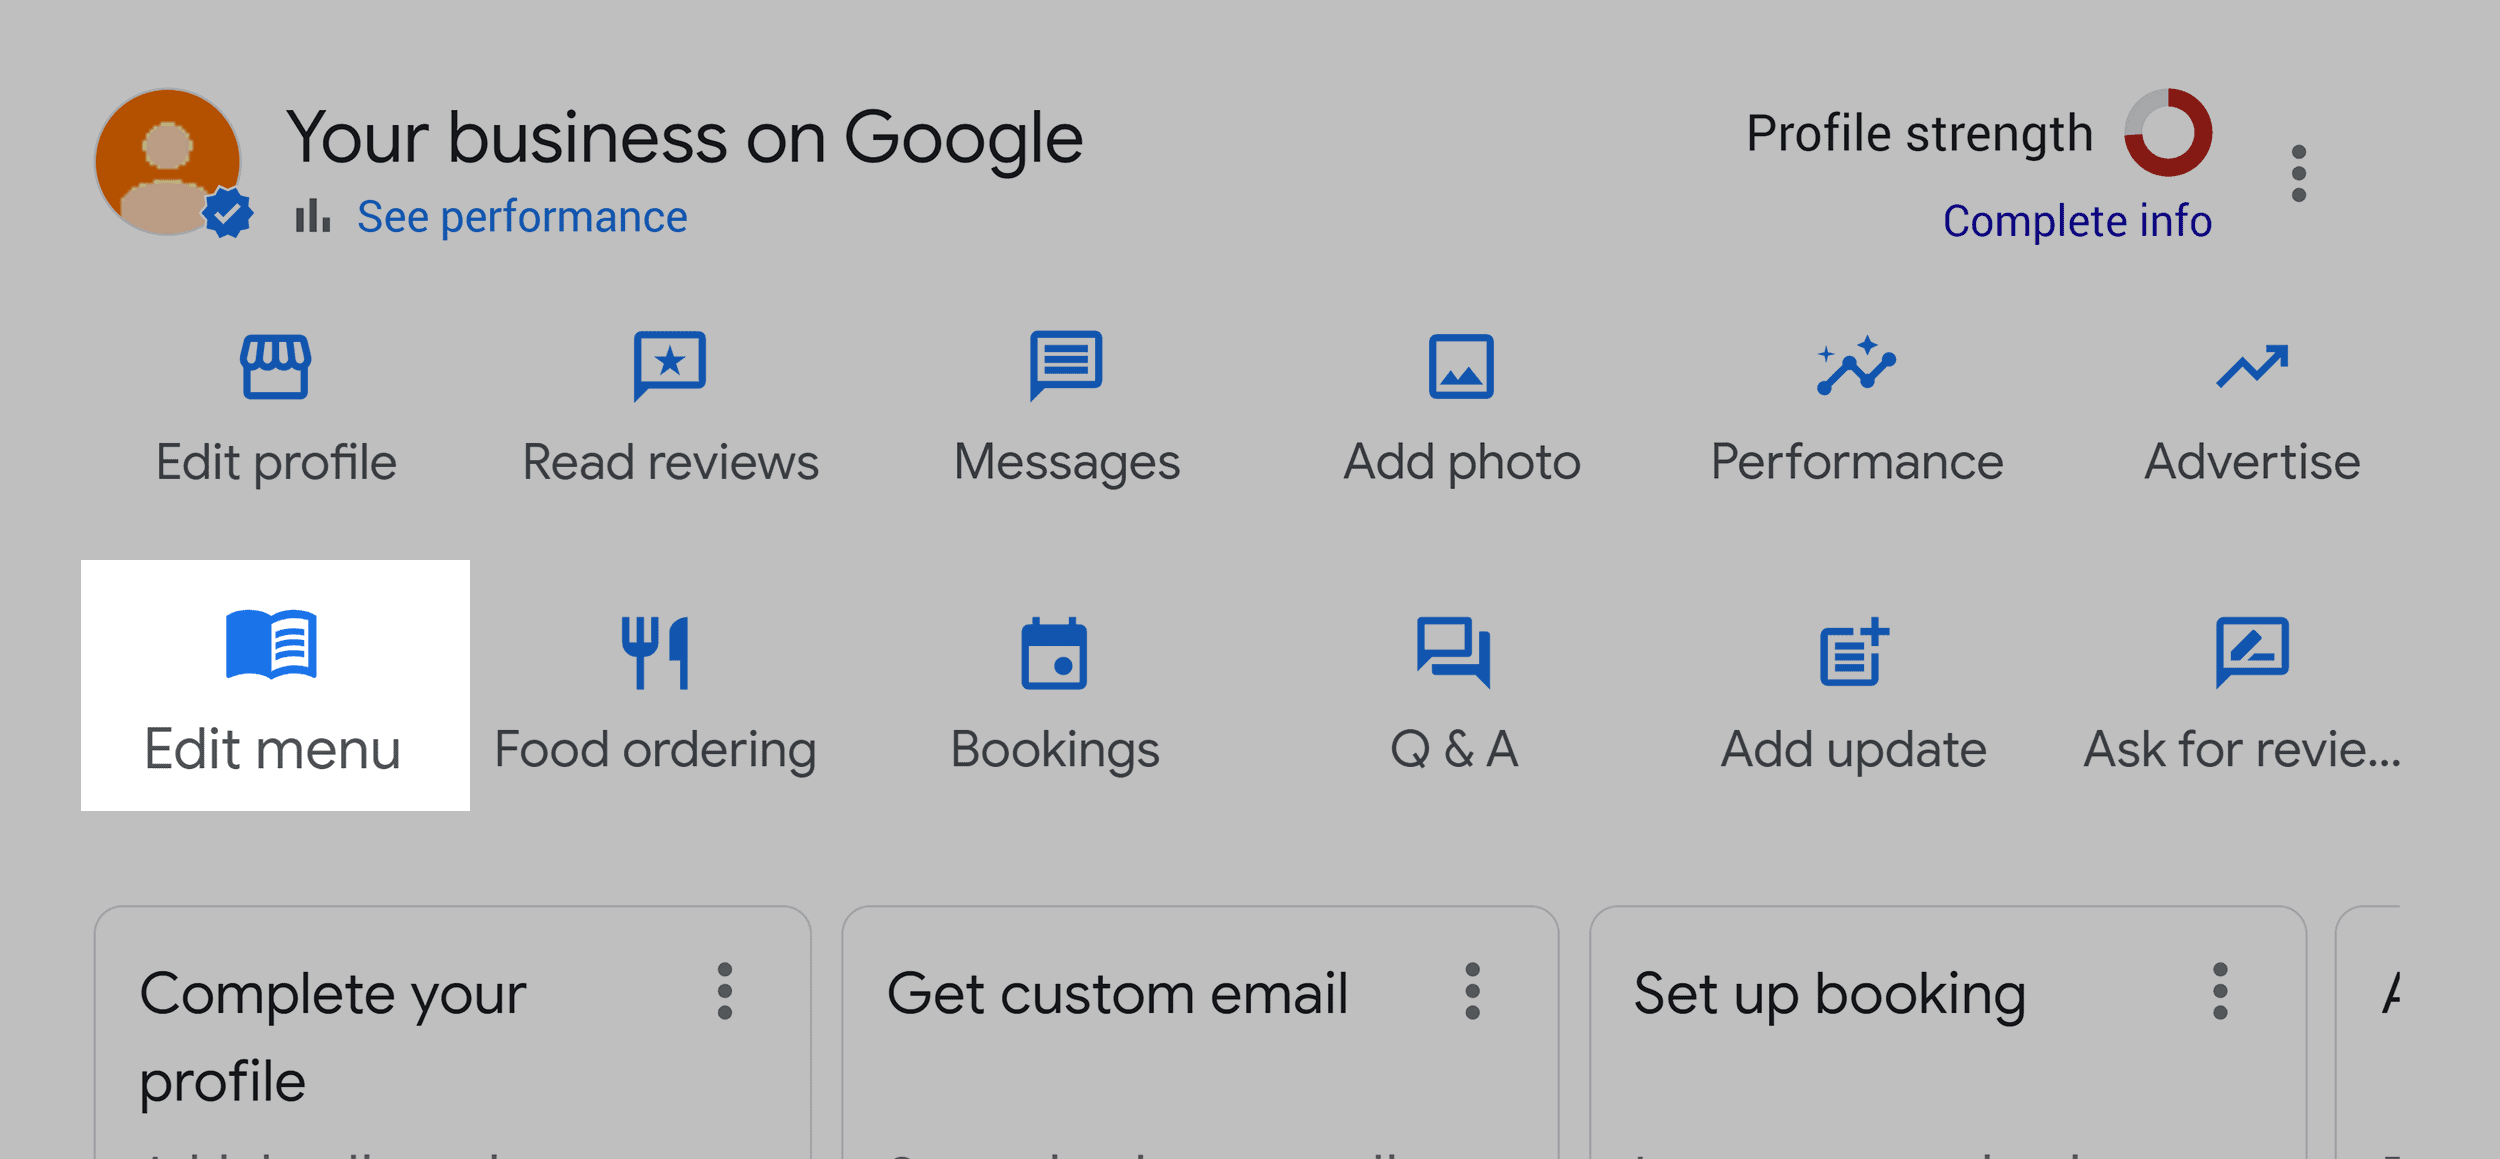 Google Business – Edit menu